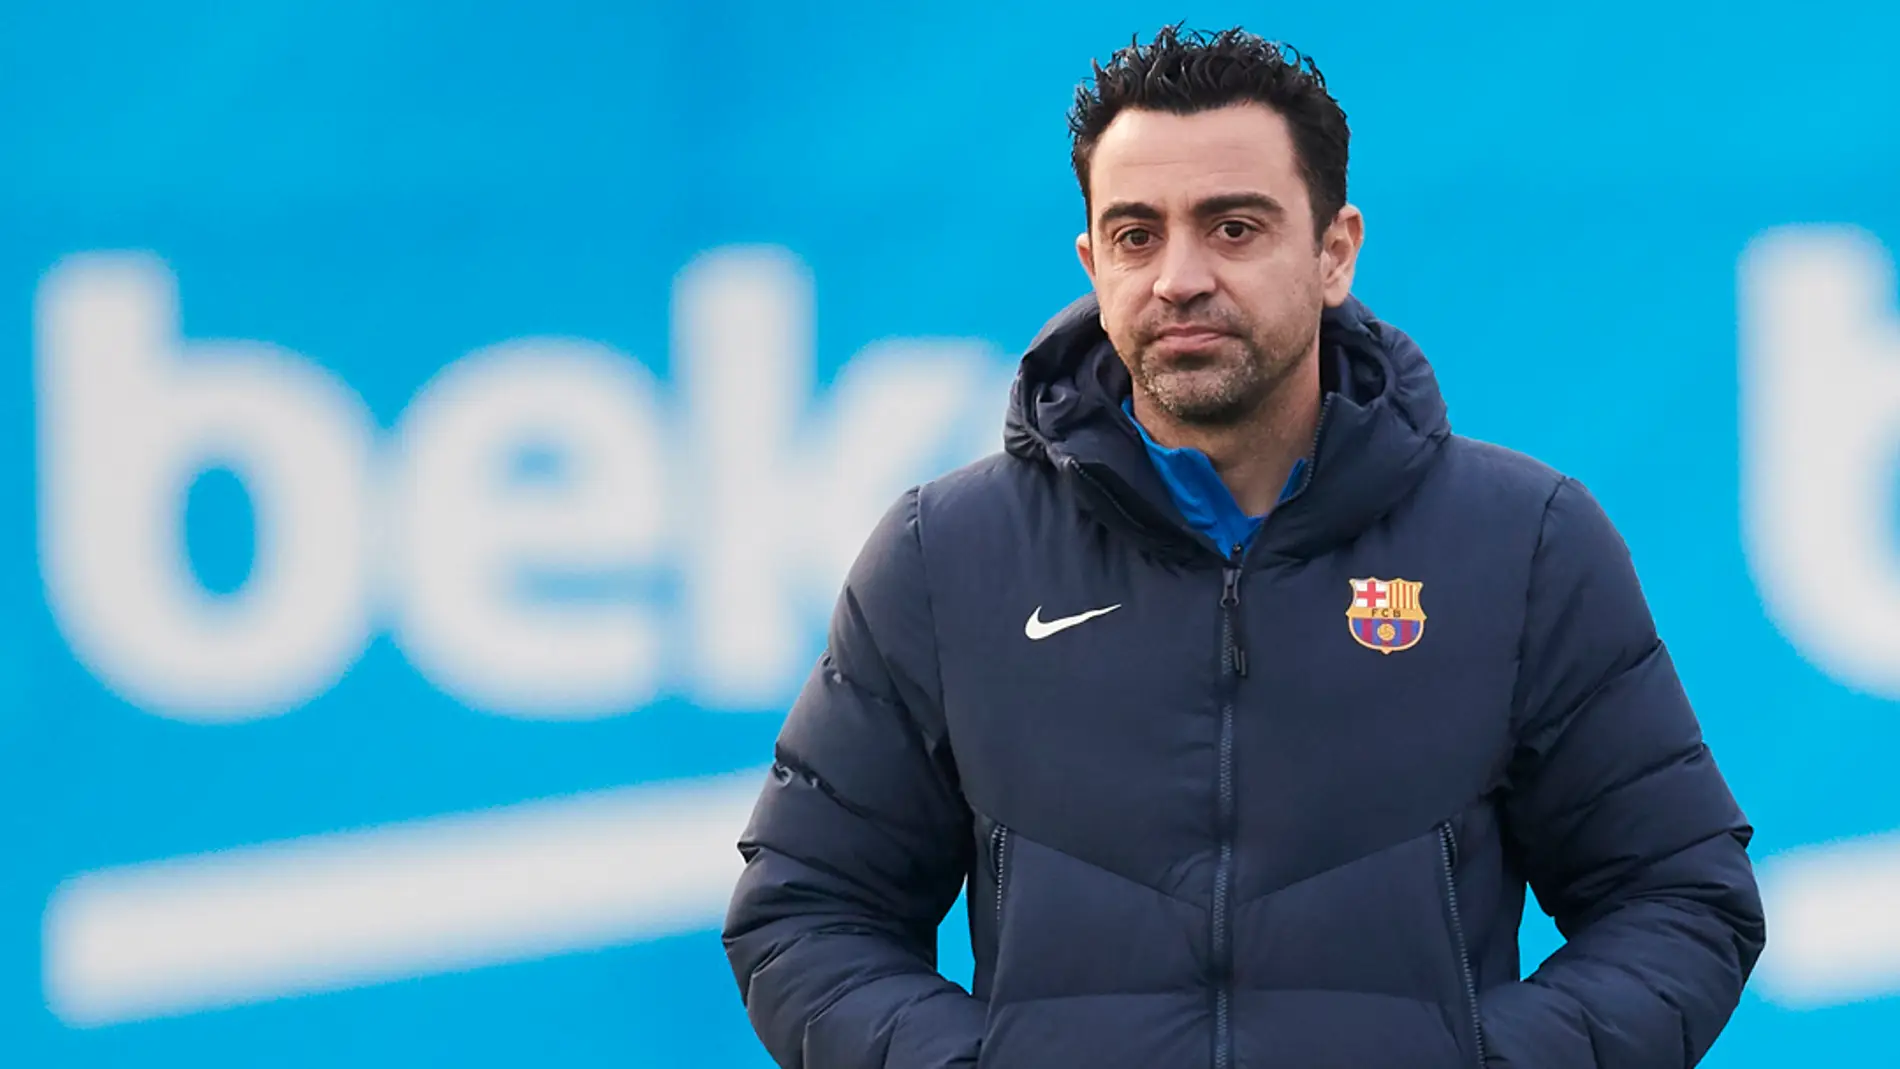 Xavi, técnico del FC Barcelona